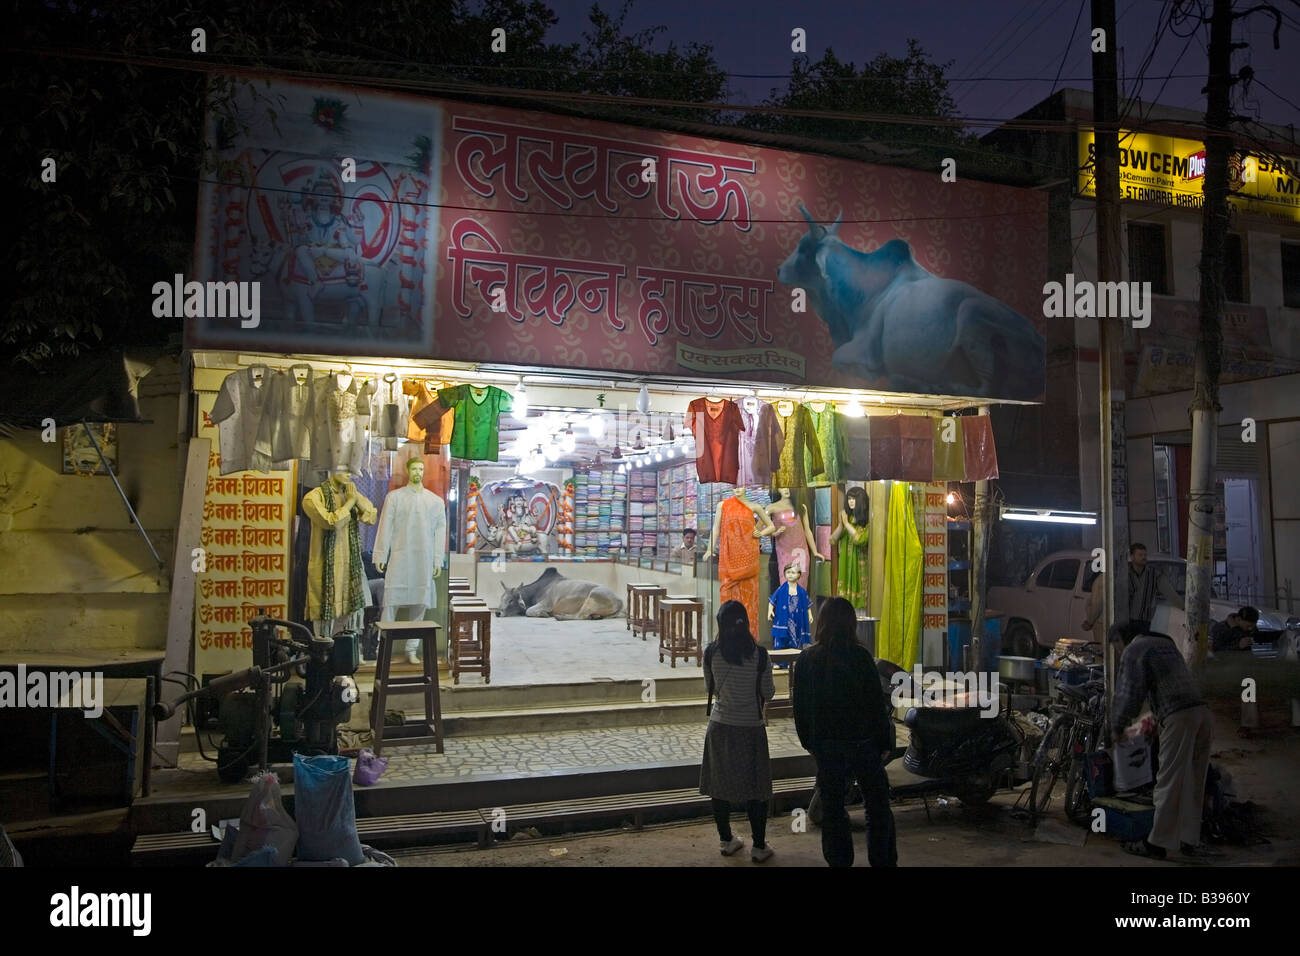 La India Varanasi textiles tienda con santo Shiva toro Nandi s como mascota 2008 Foto de stock